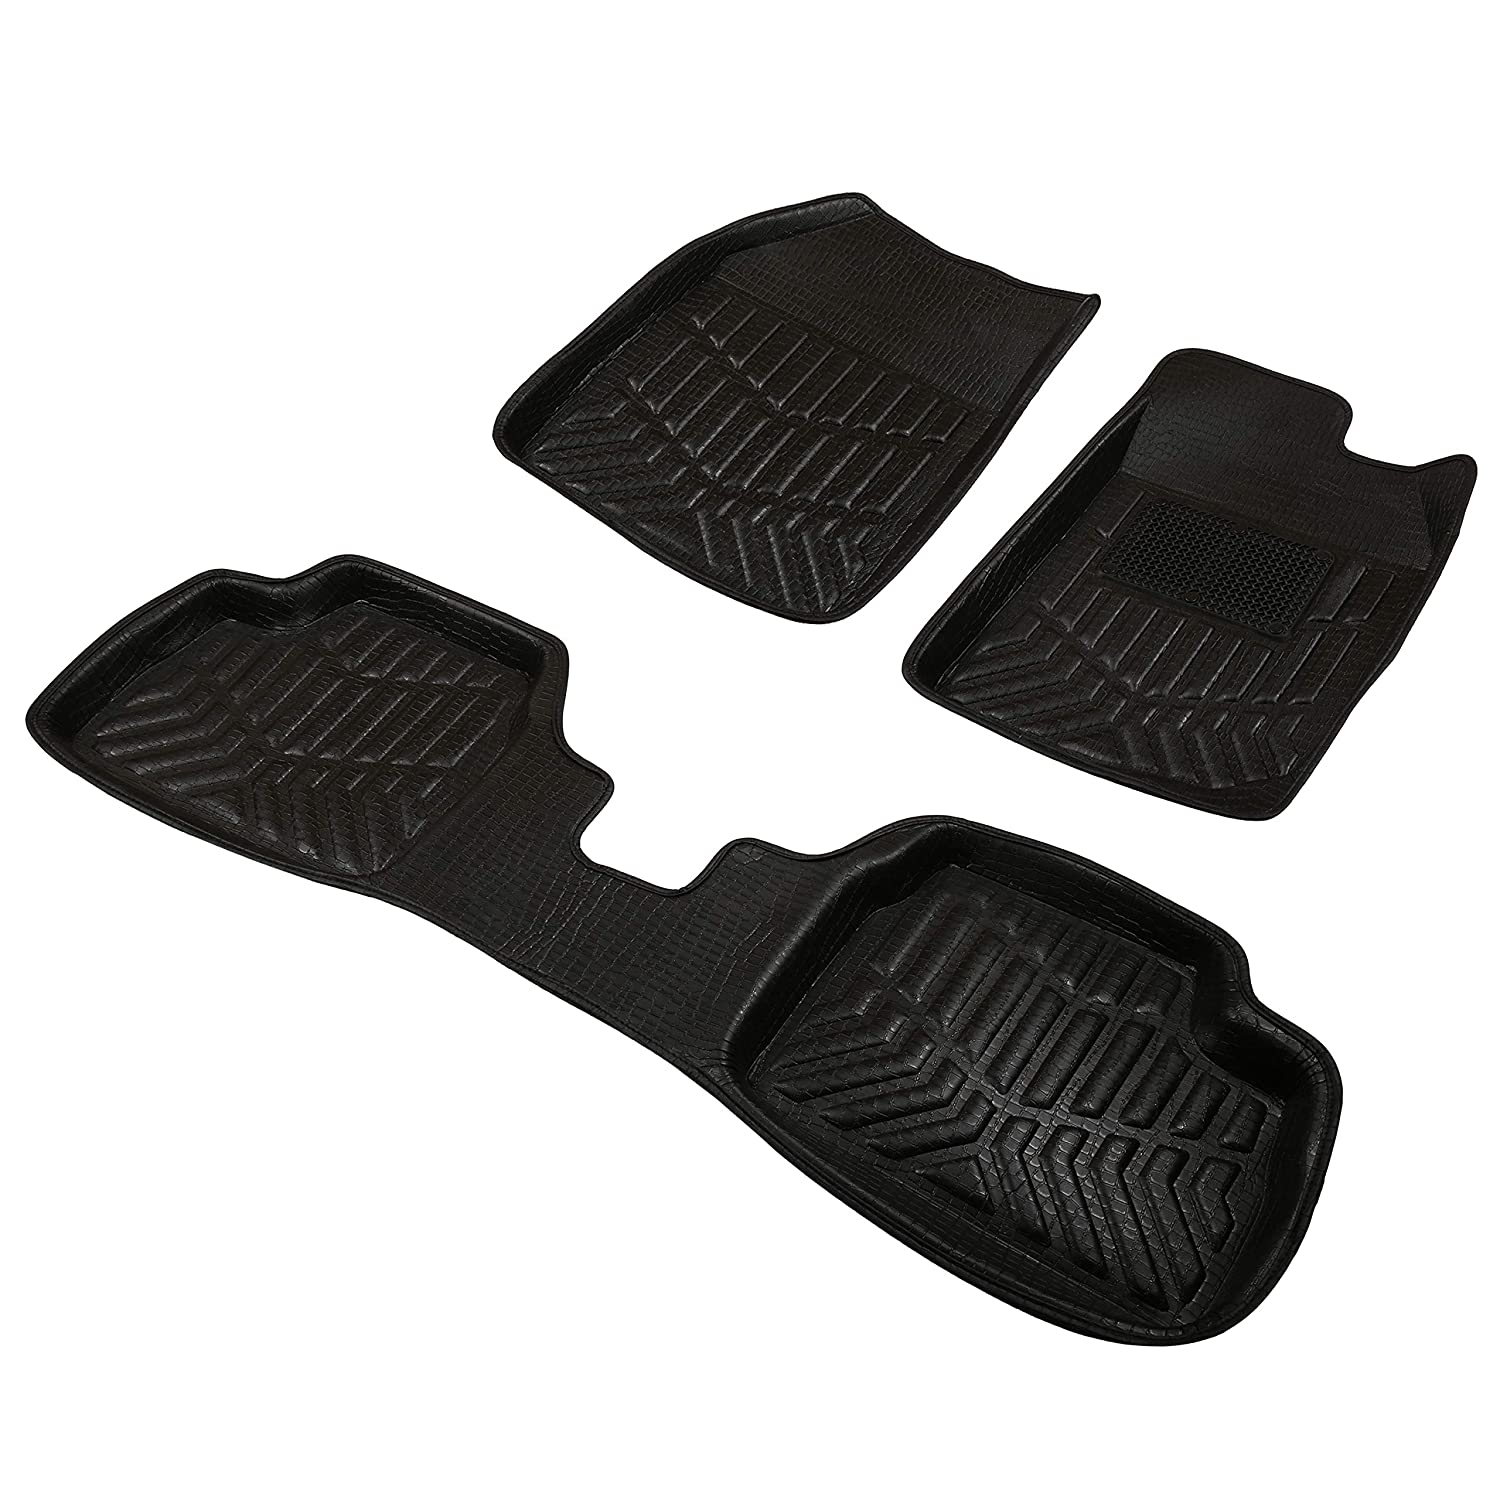 Drivn 3D Customised Car Floor Mat for Mahindra Bolero - Black (Set of 3)